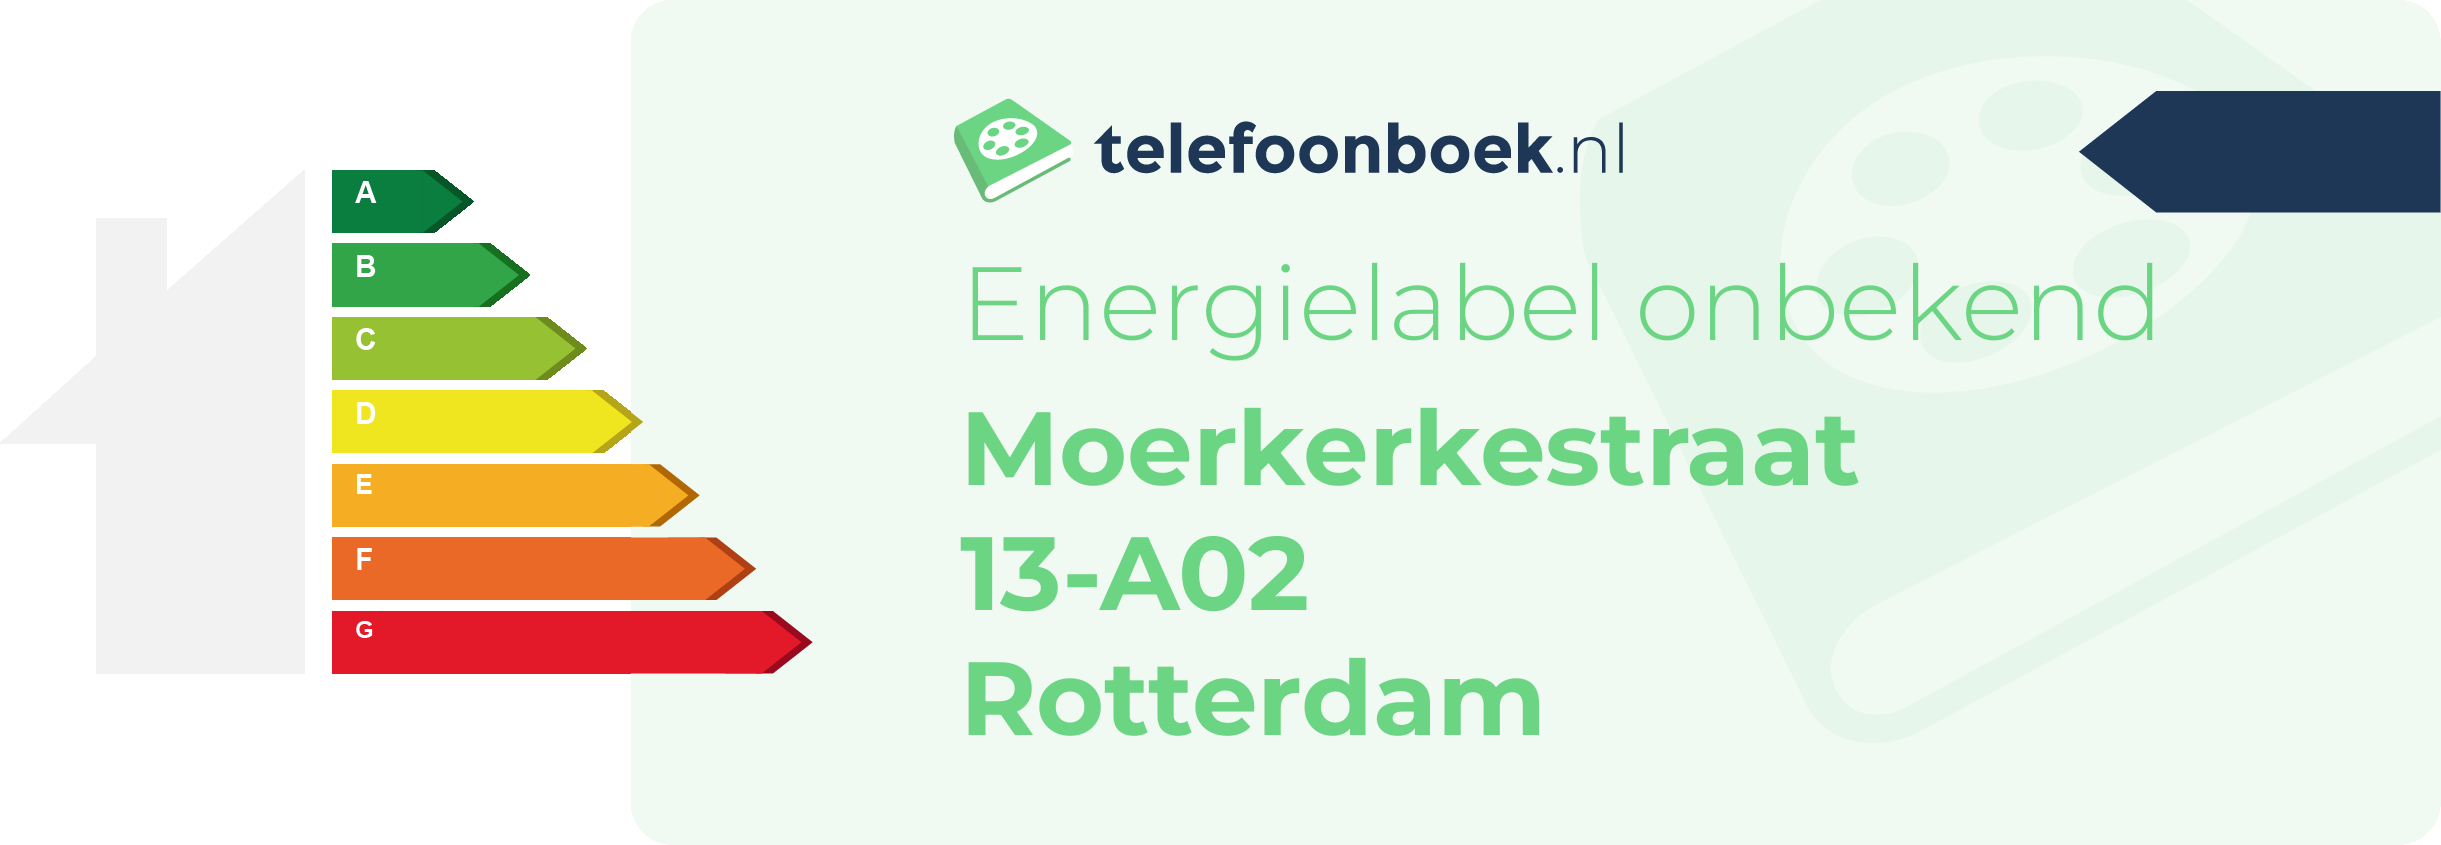 Energielabel Moerkerkestraat 13-A02 Rotterdam